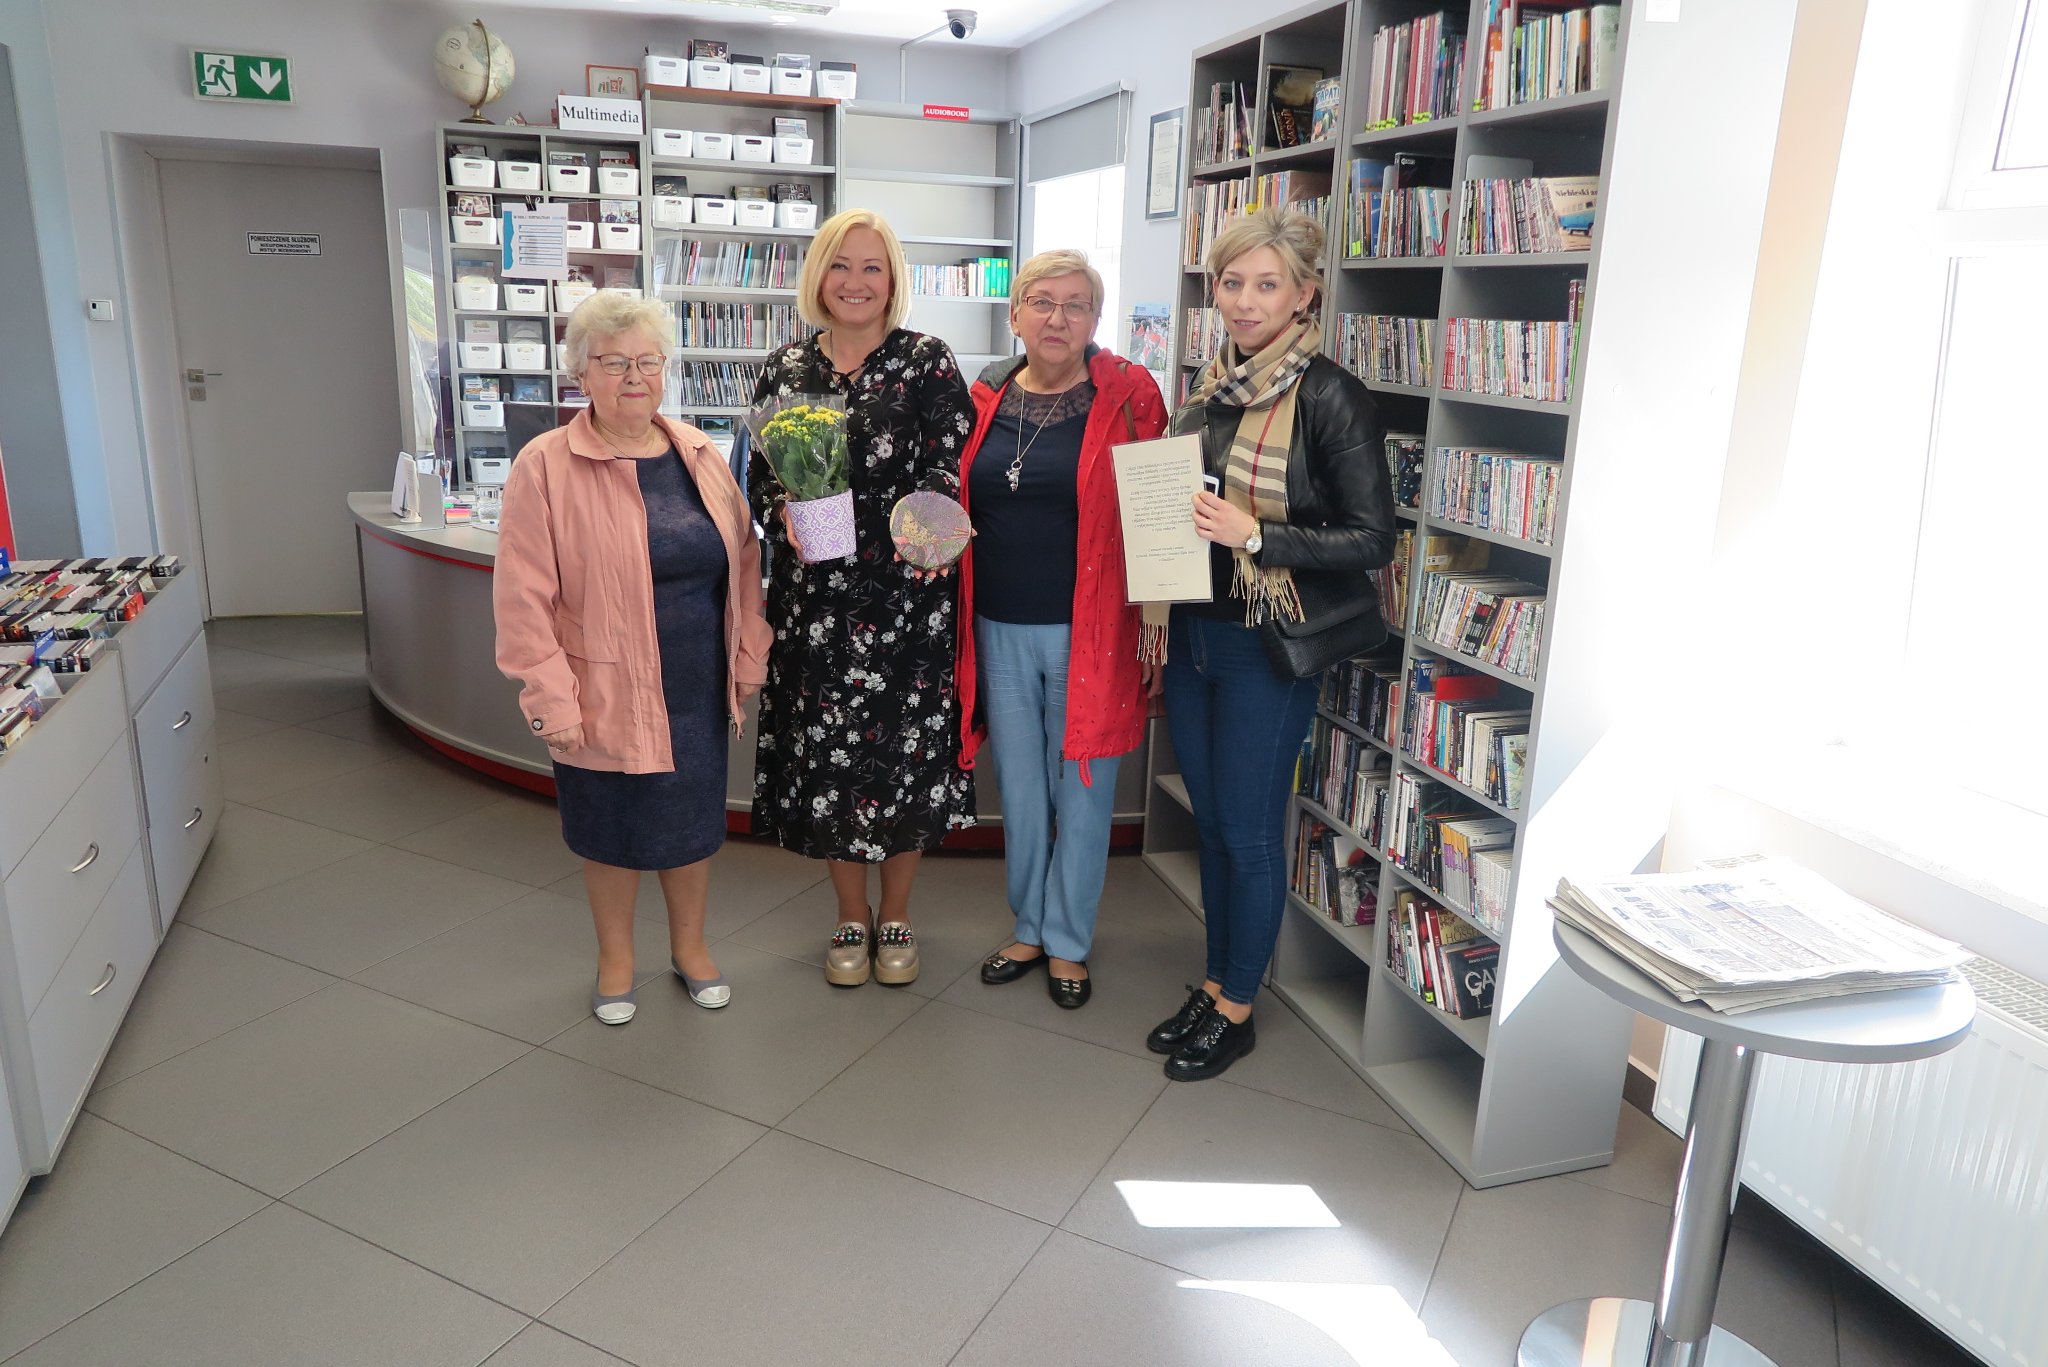 4 kobiety, dyrektor biblioteki i 3 kobiety z klubu seniora wręczają dyrektorce prezent z okazji dnia bibliotekarza i bliblioteki